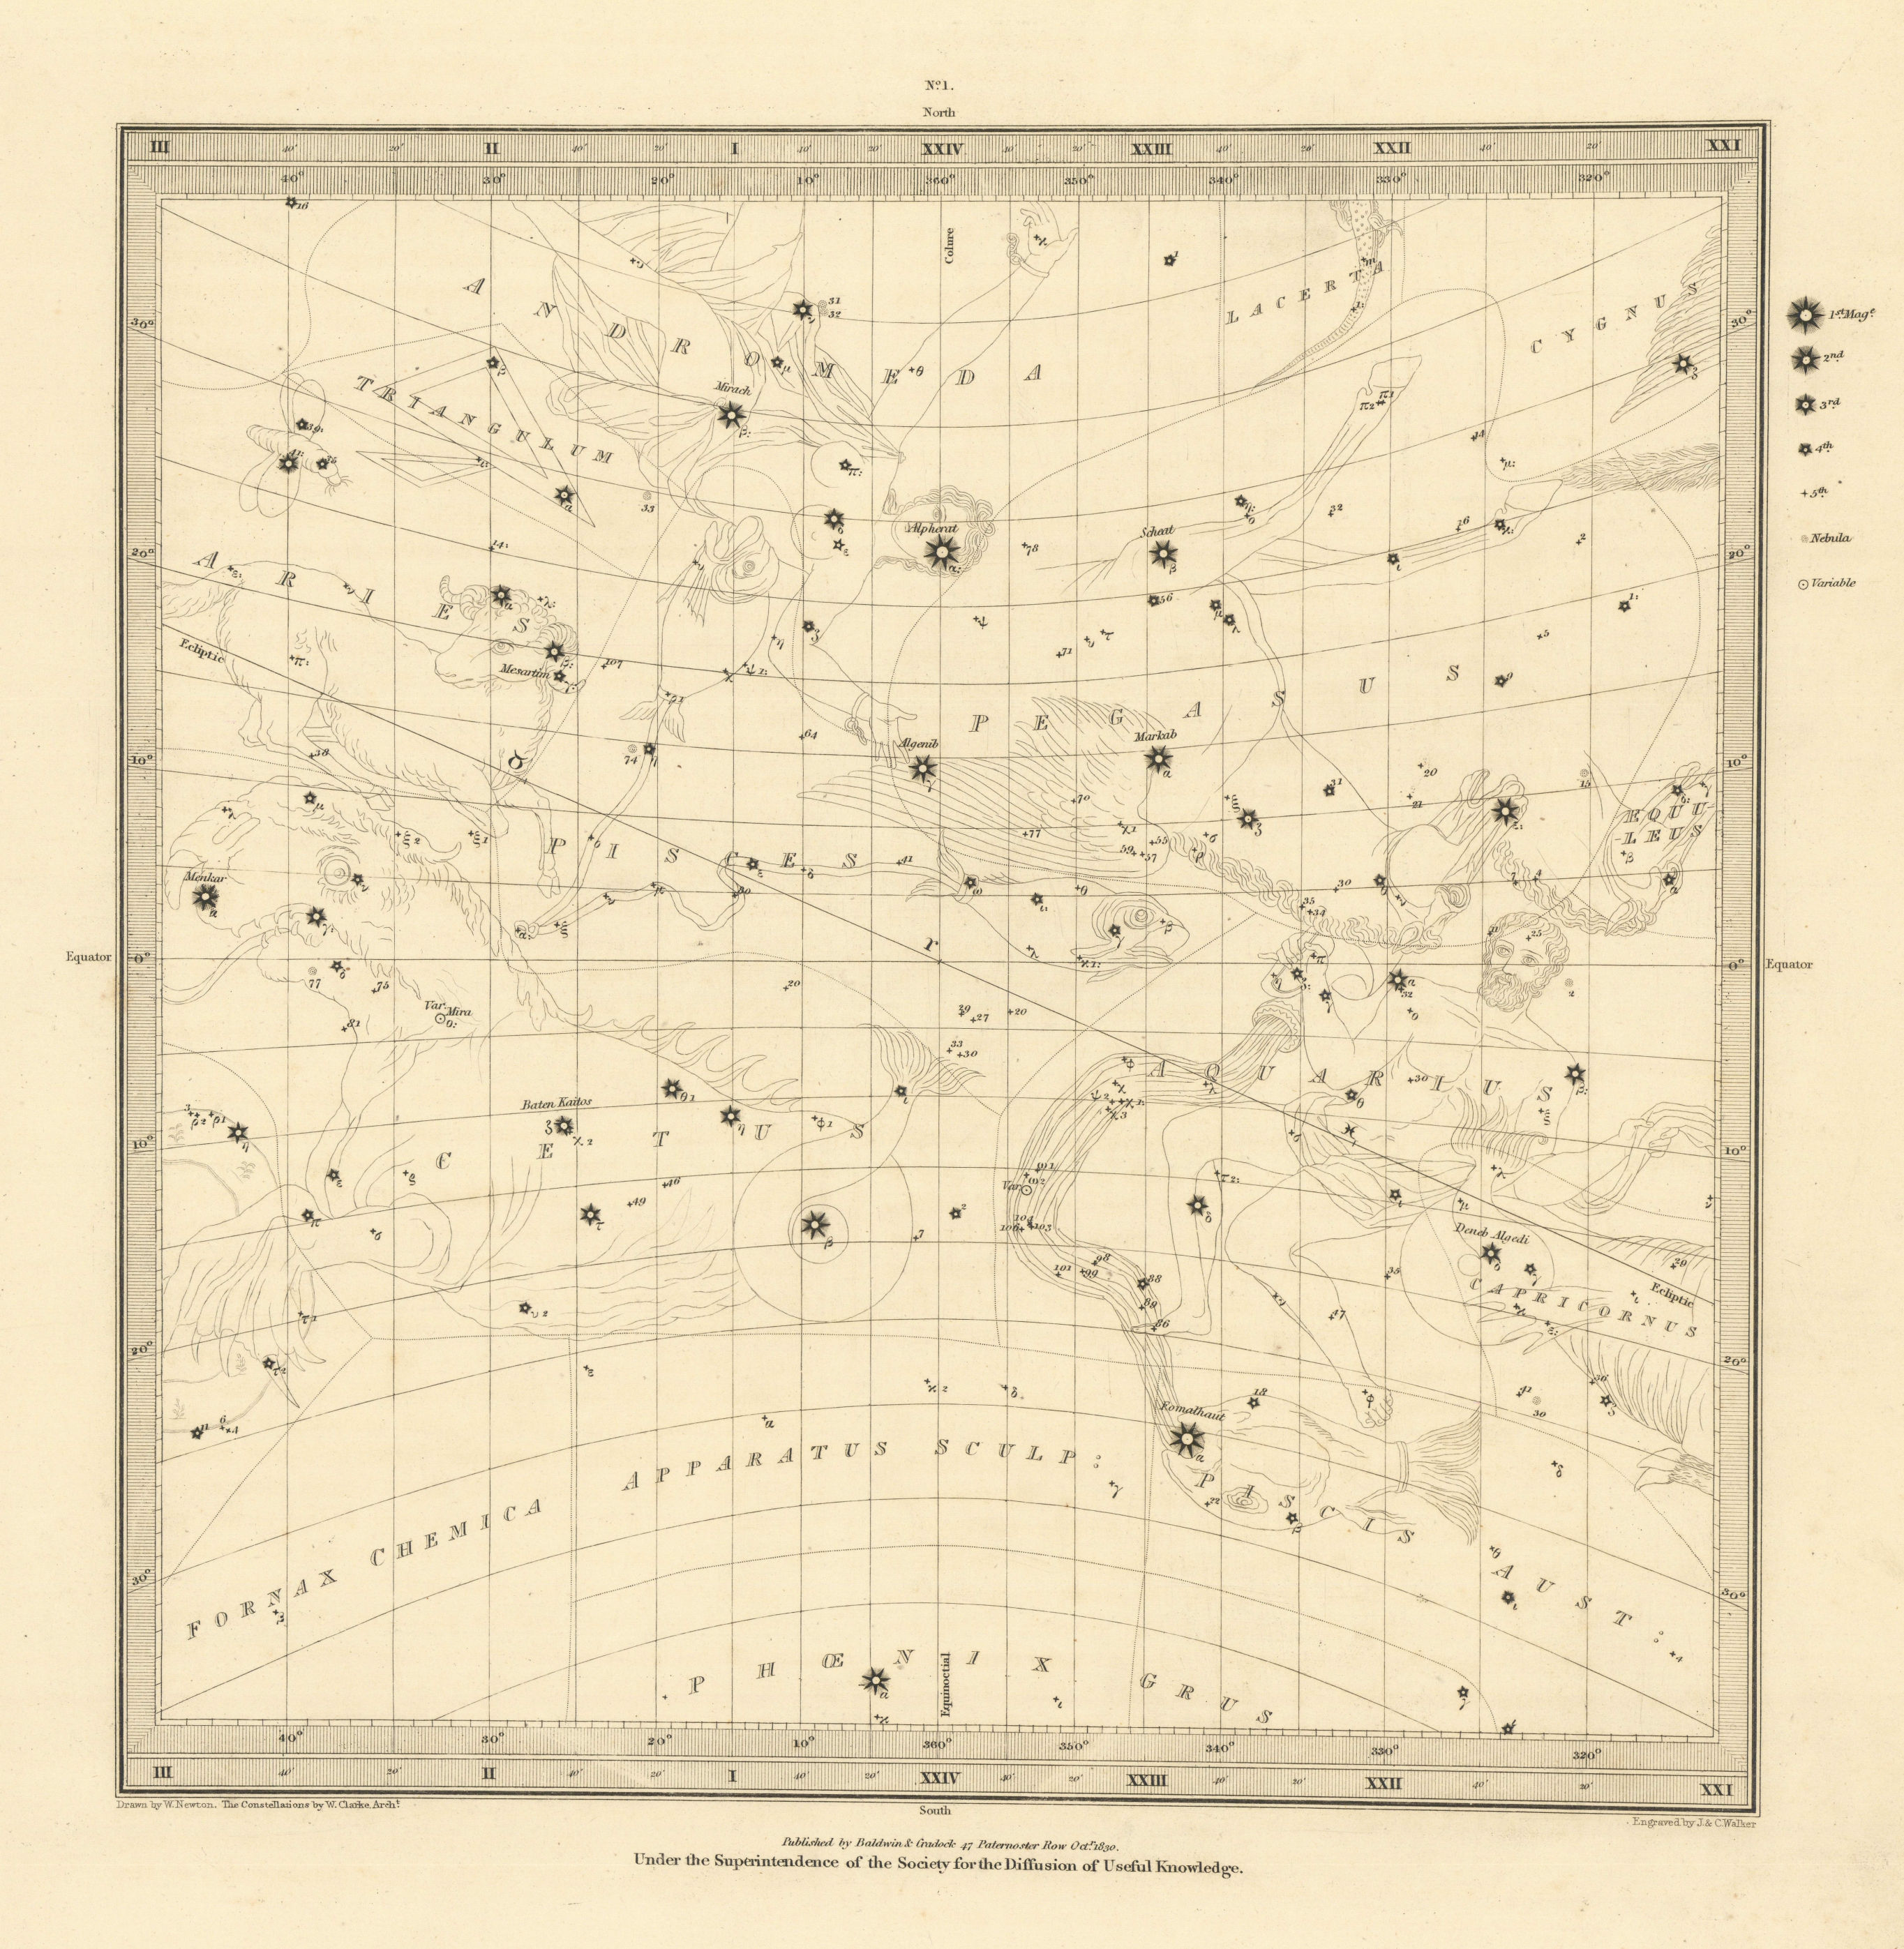 ASTRONOMY CELESTIAL. Star map. Star chart, I. Vernal Equinox. SDUK 1830